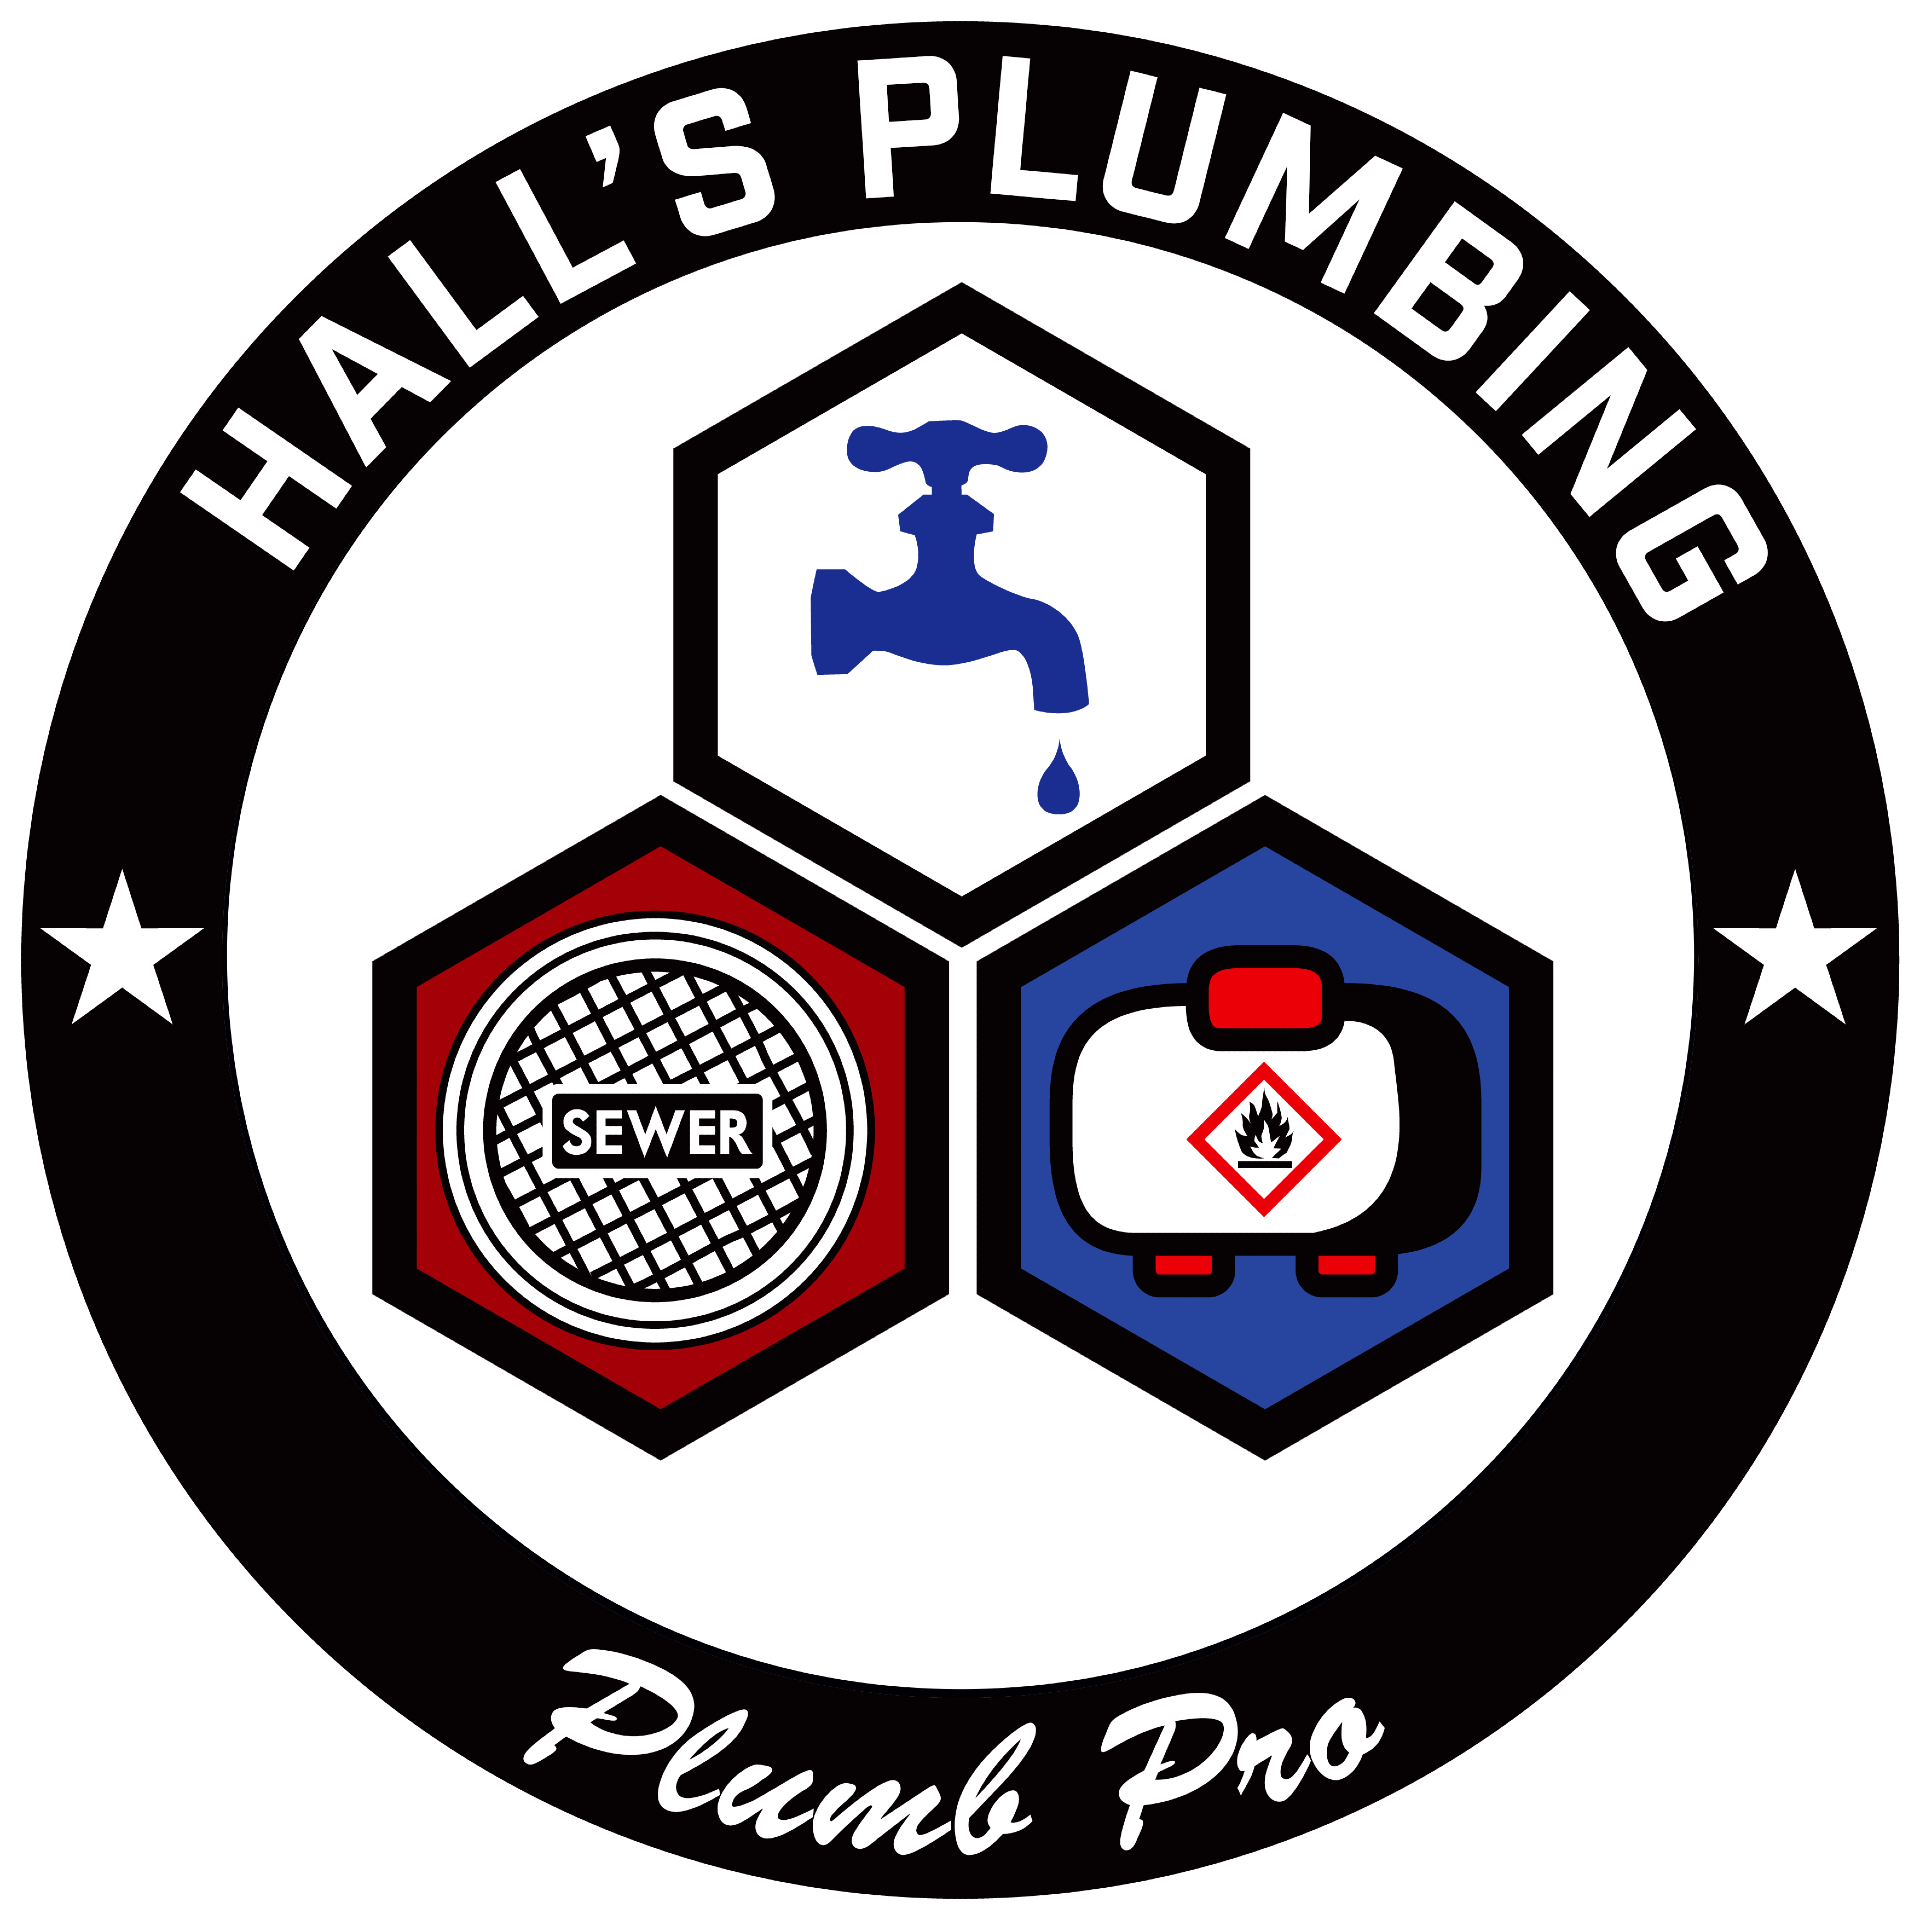 Halls Plumbing company logo